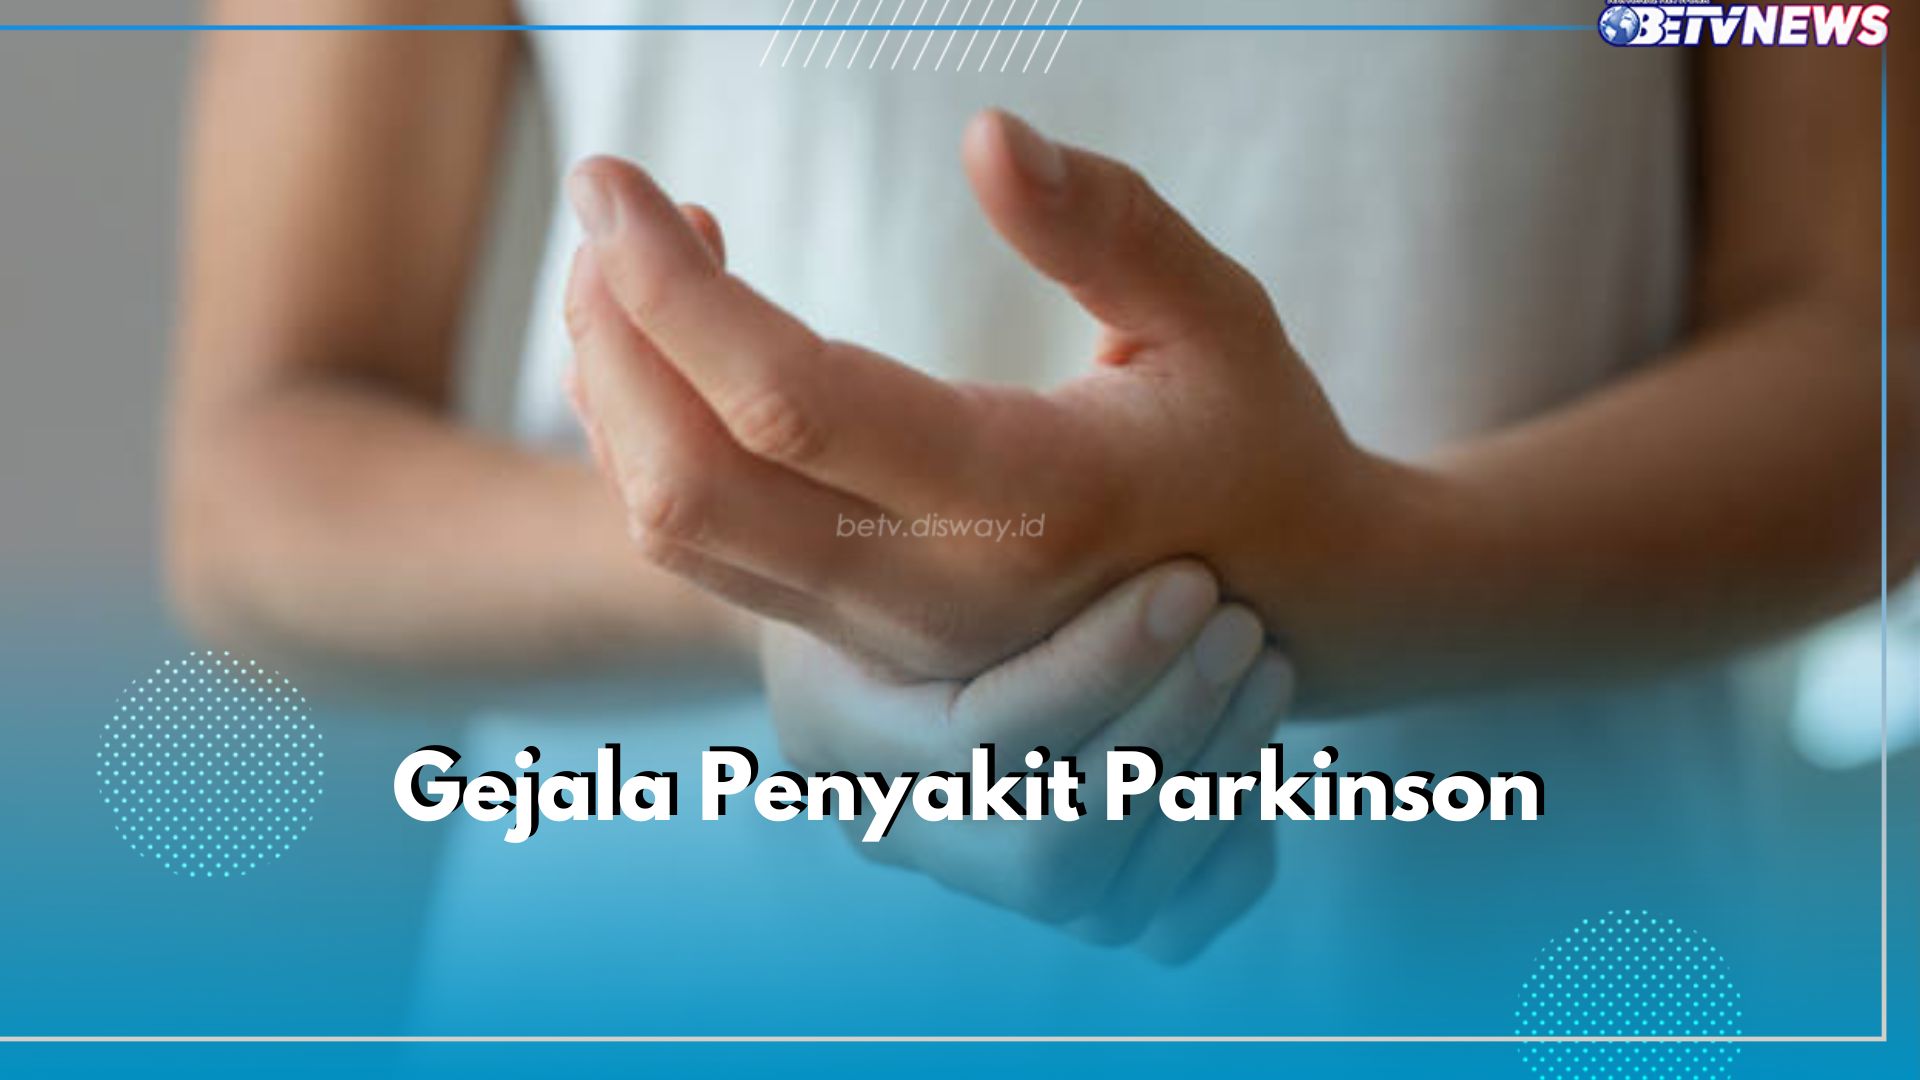 Deteksi Penyakit Parkinson Sejak Dini dengan 6 Gejala Ini, Salah Satunya Tremor